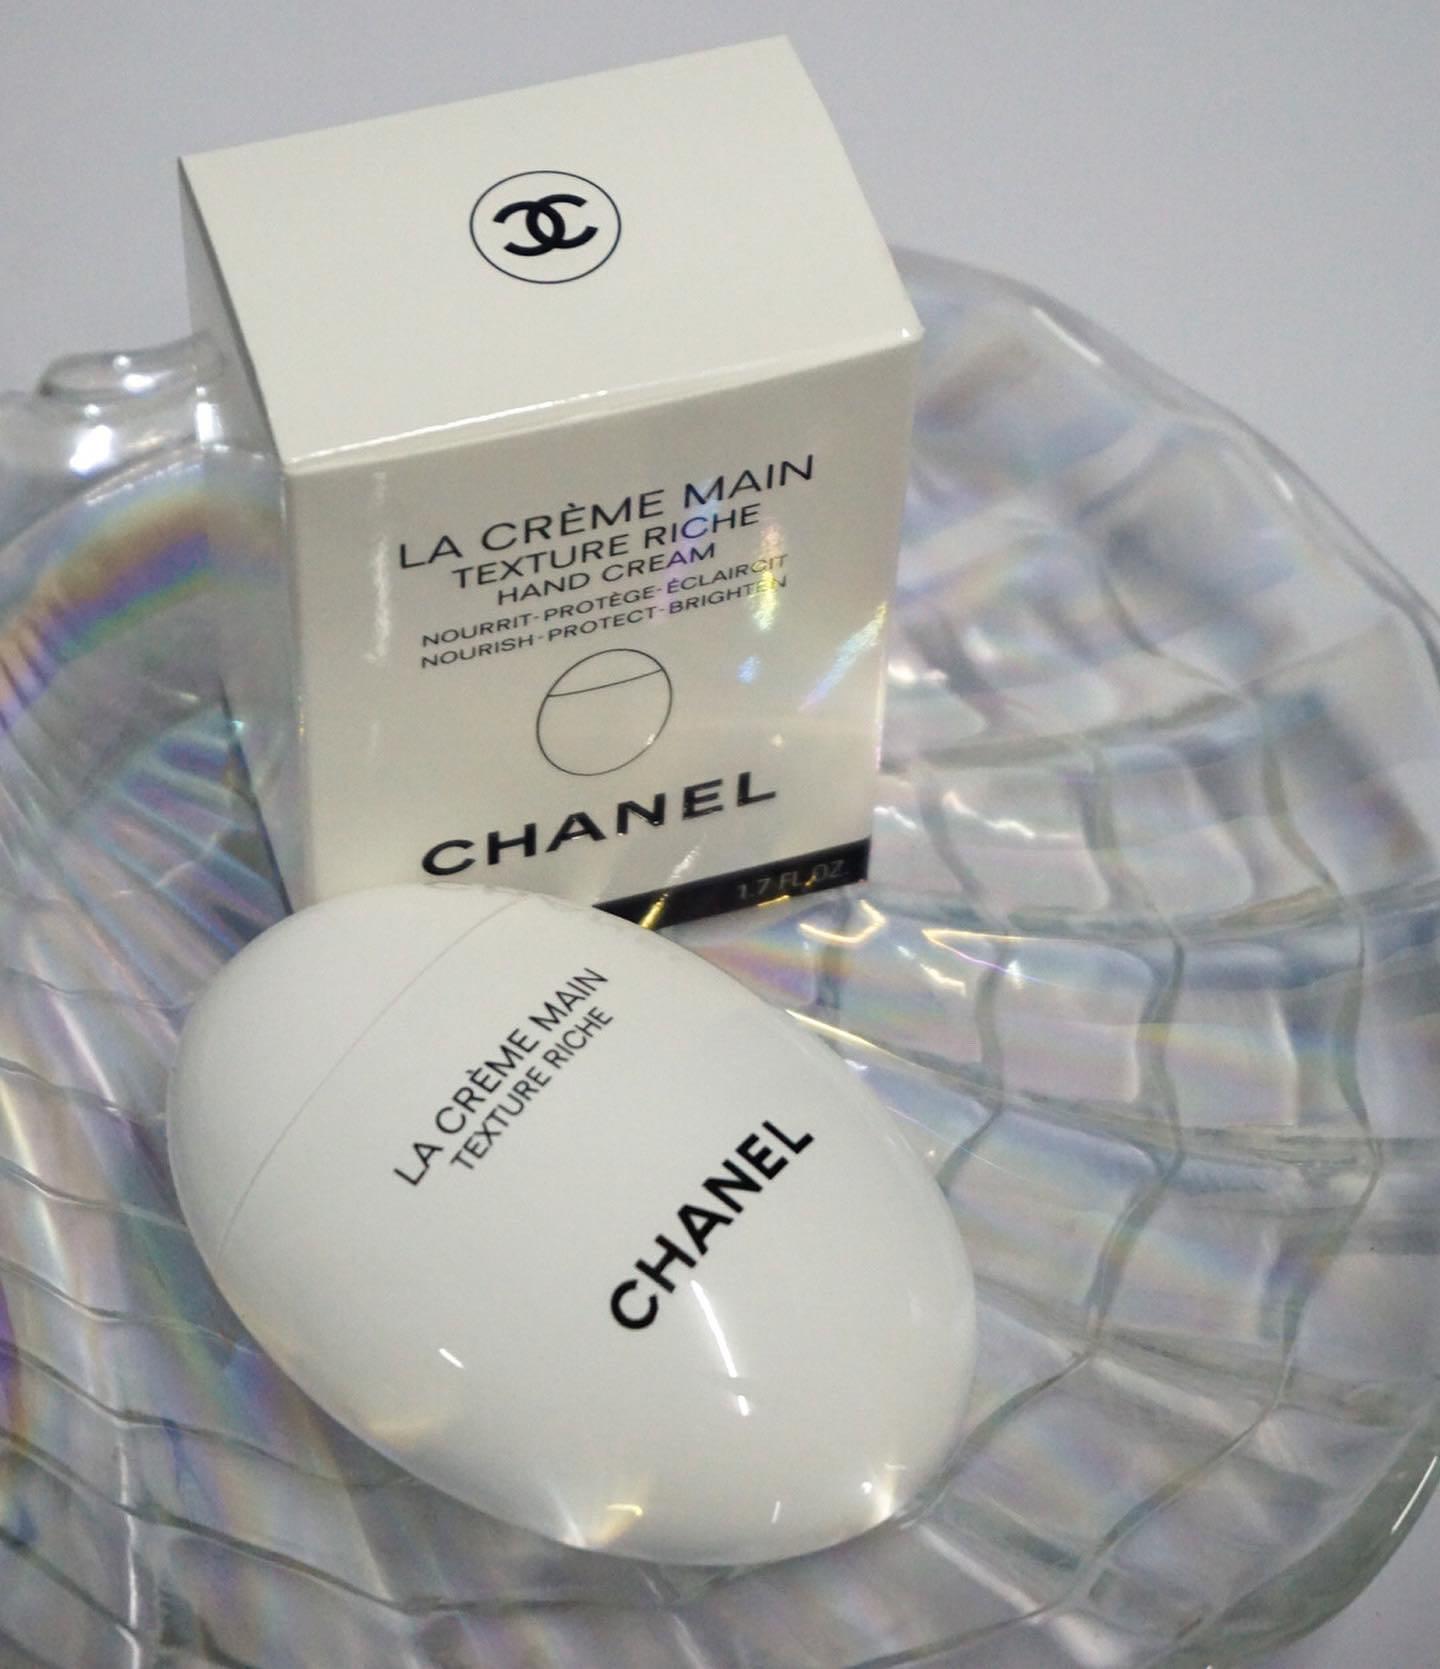 CHANEL La Creme Main Texture Riche Hand Cream 5ml for sale online